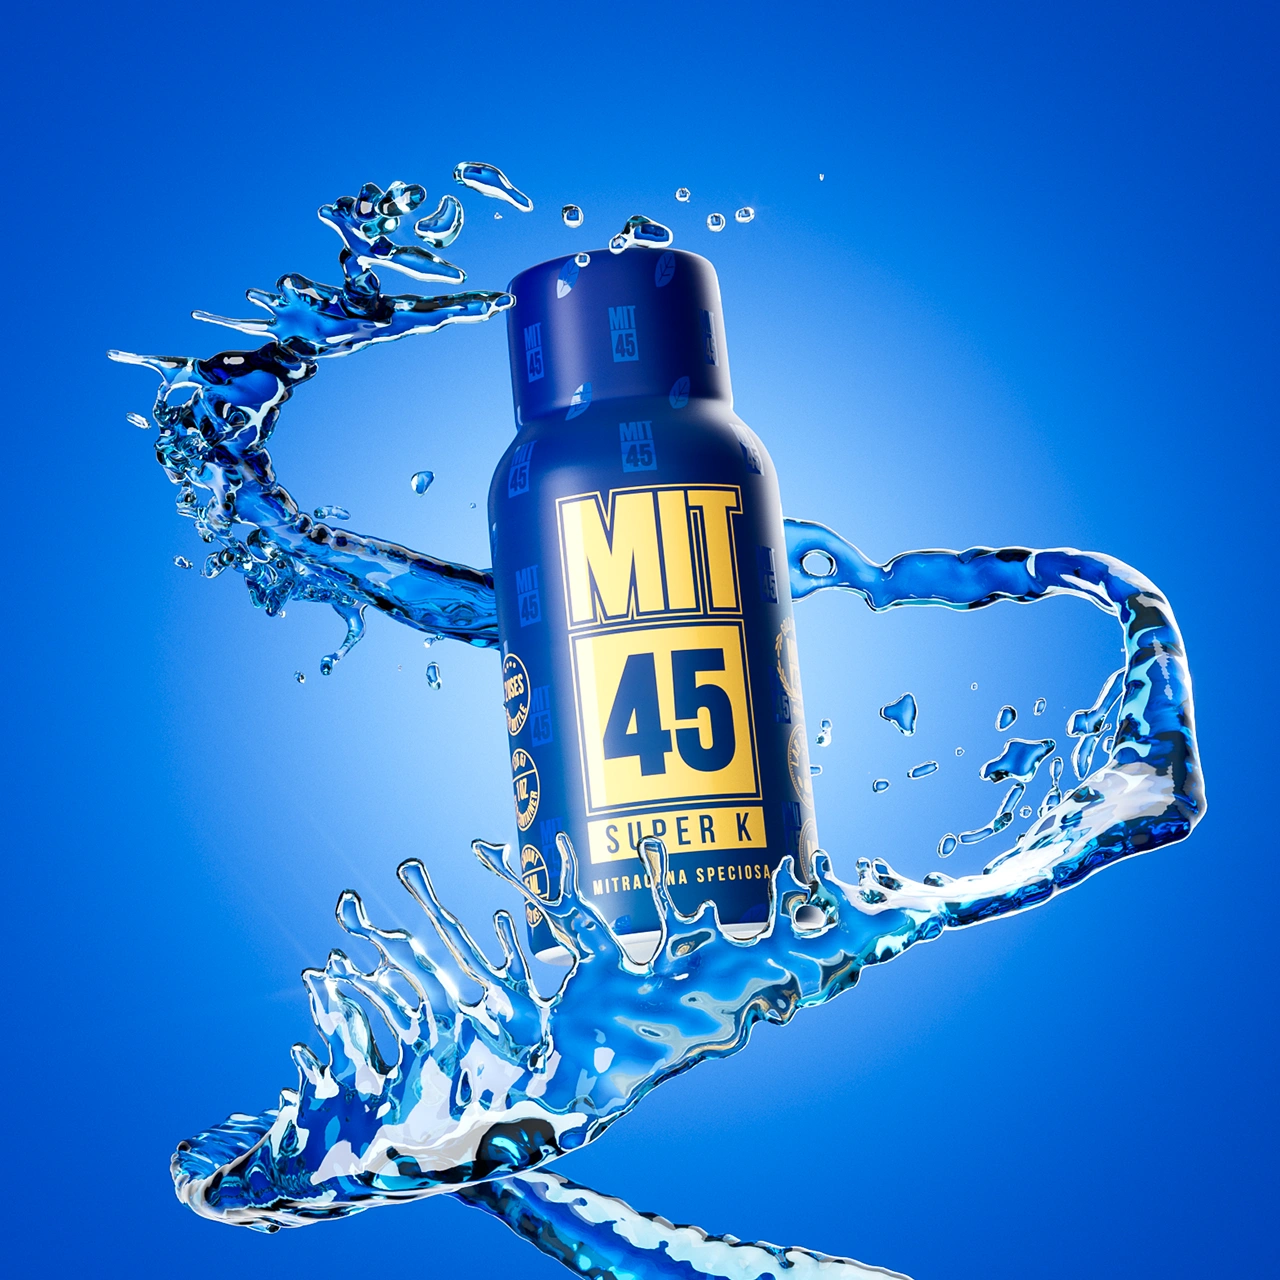 MIT45 Super K on blue background with liquid splash